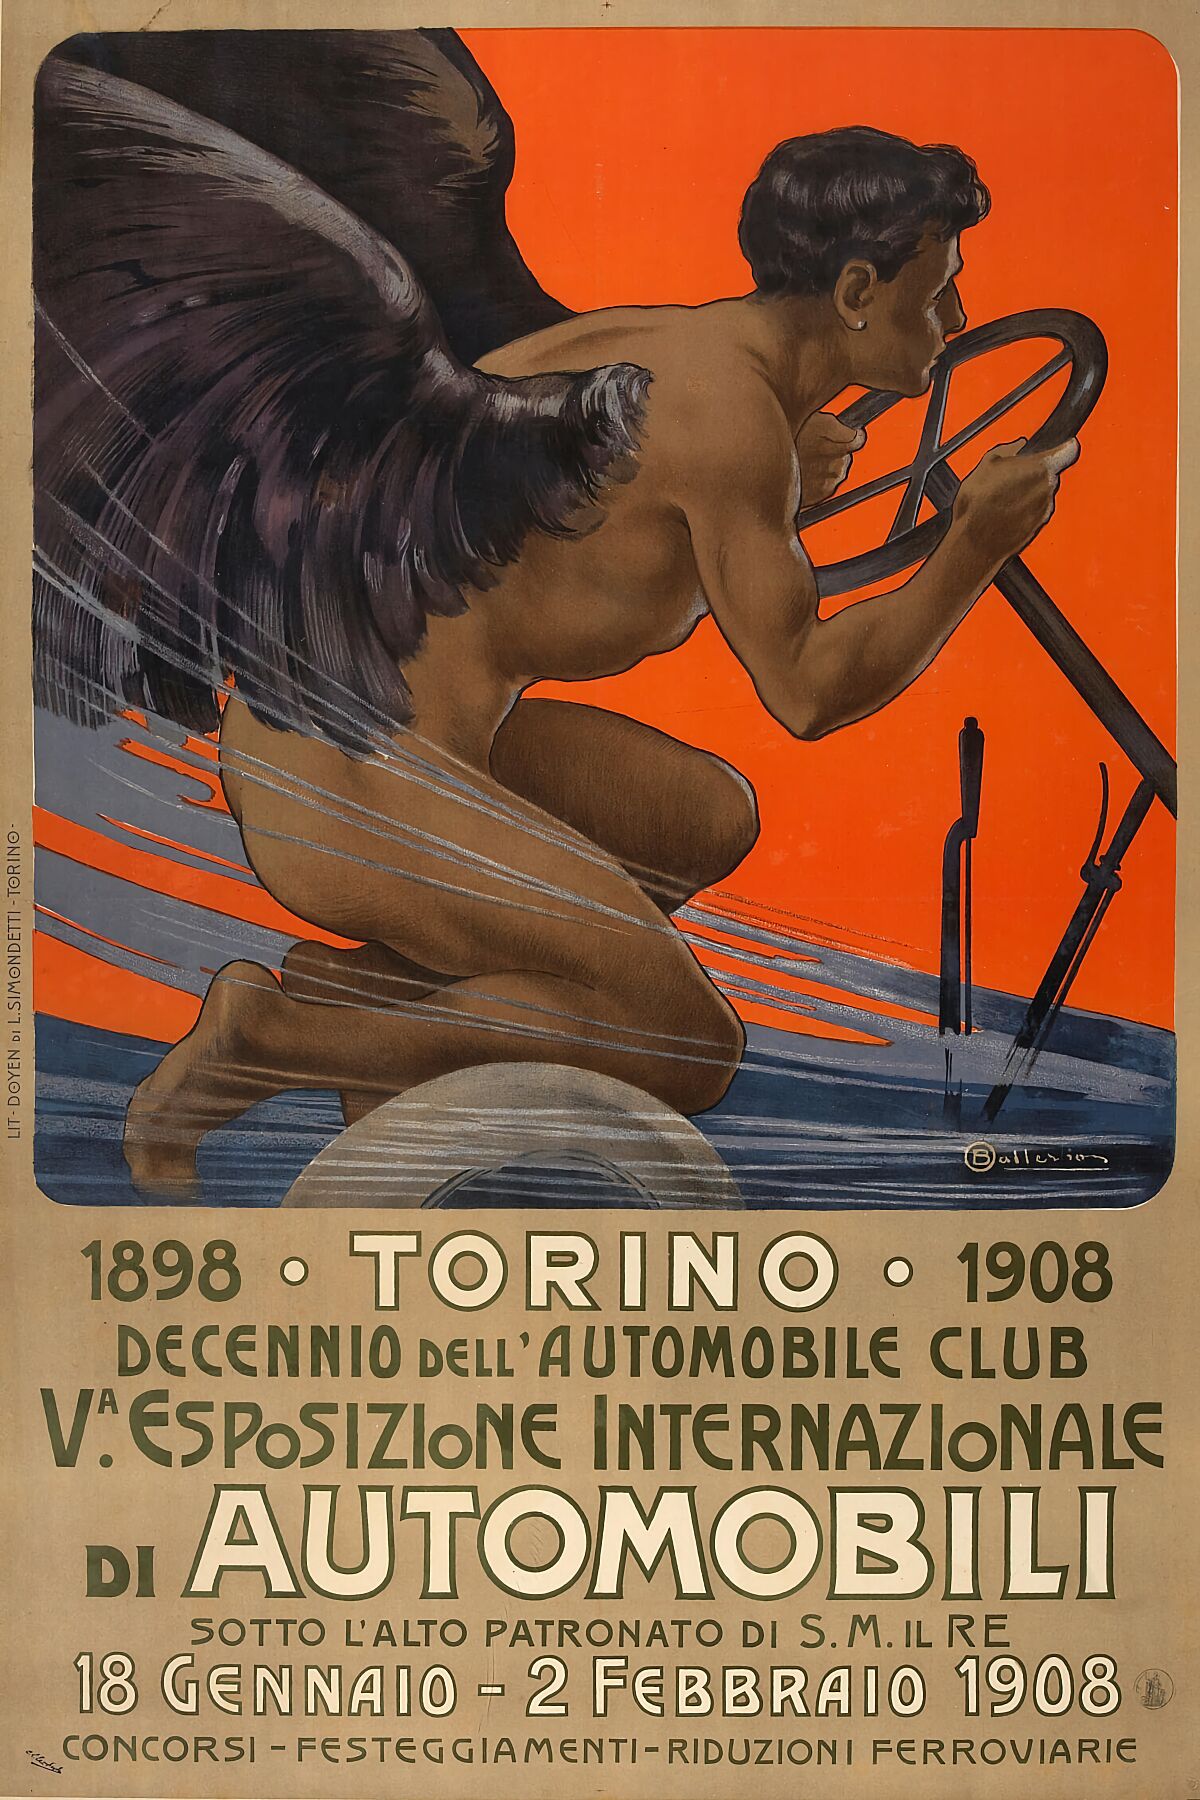 Va. Esposizione Internationazione di Automobili, Torino par Osvaldo Ballerio - 1908